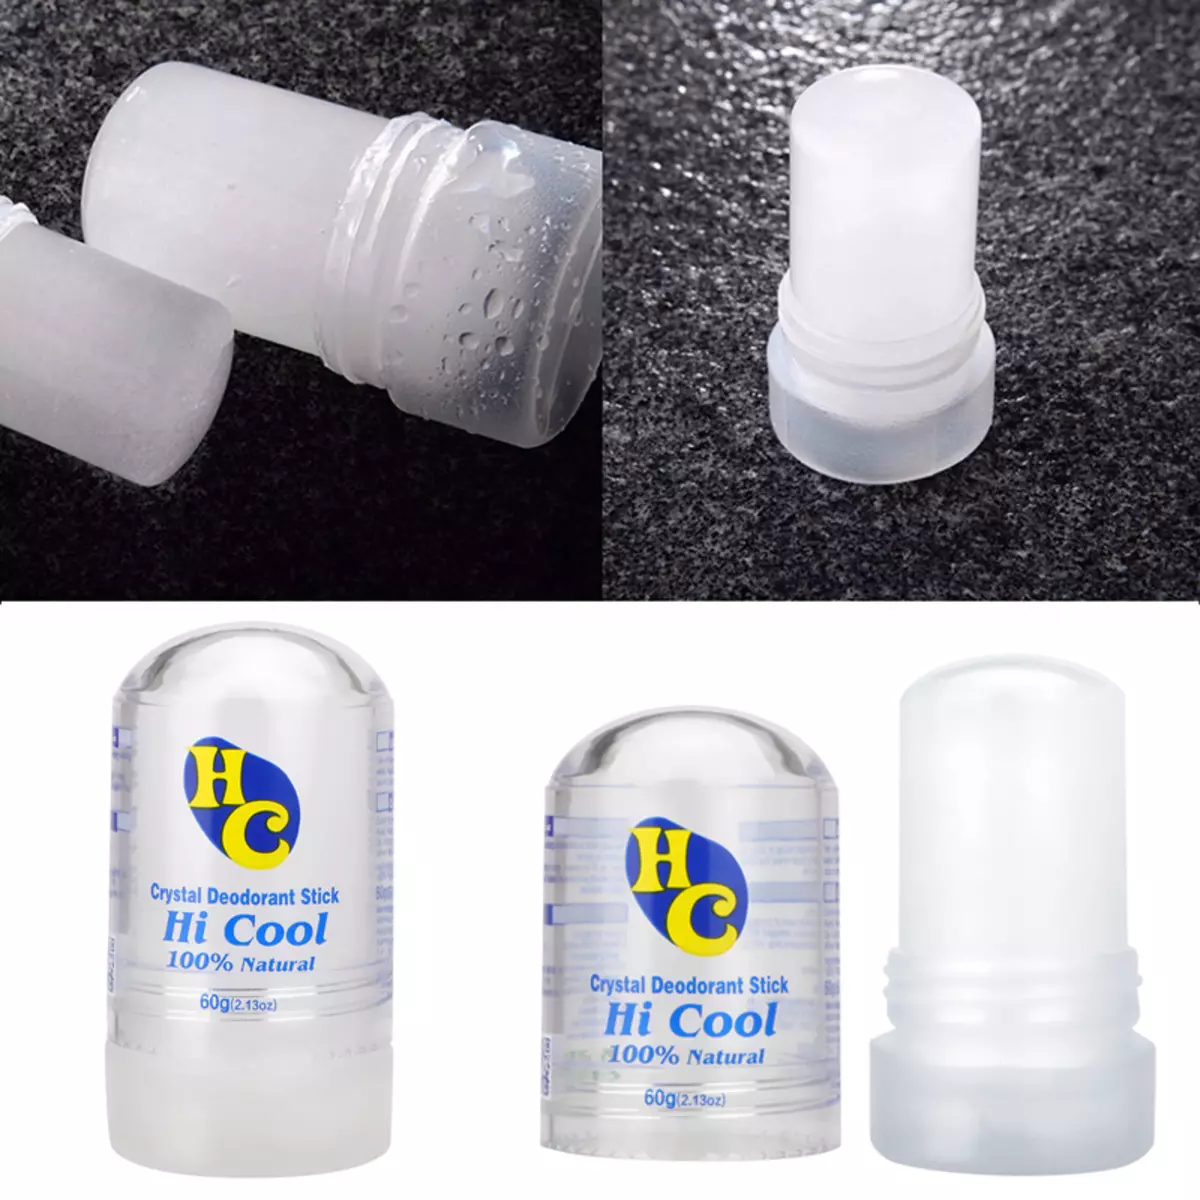 Droë deodorant (18 foto's): Wat beteken die Antiperspirant lyk vir vroue? Hoe om dit te gebruik? 4658_7